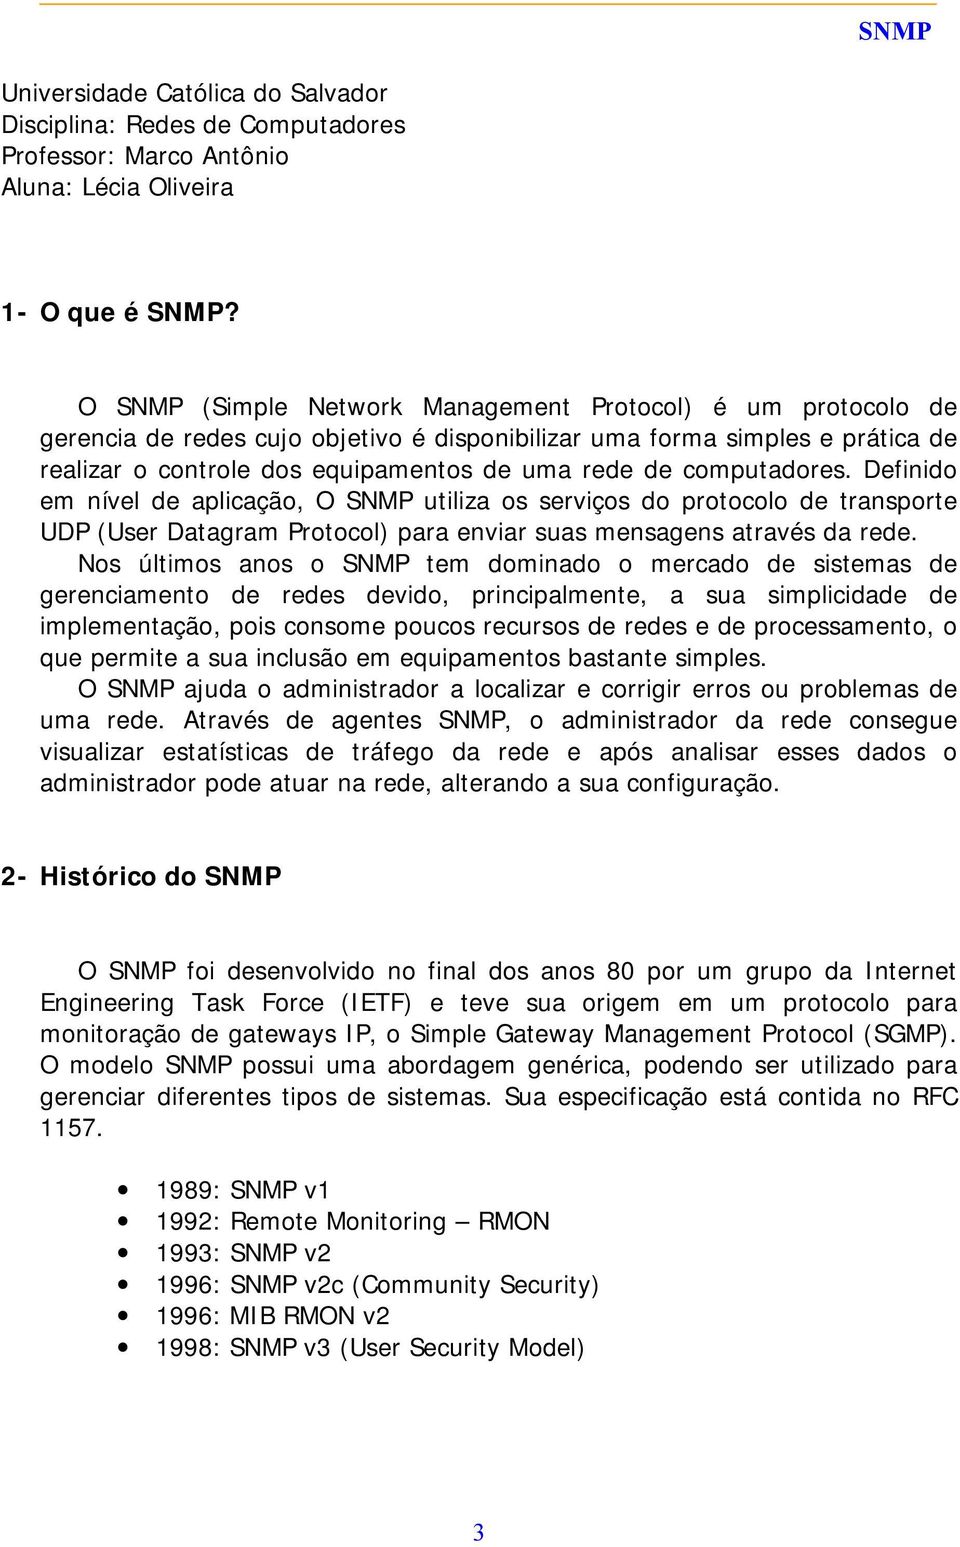 computadores. Definido em nível de aplicação, O SNMP utiliza os serviços do protocolo de transporte UDP (User Datagram Protocol) para enviar suas mensagens através da rede.